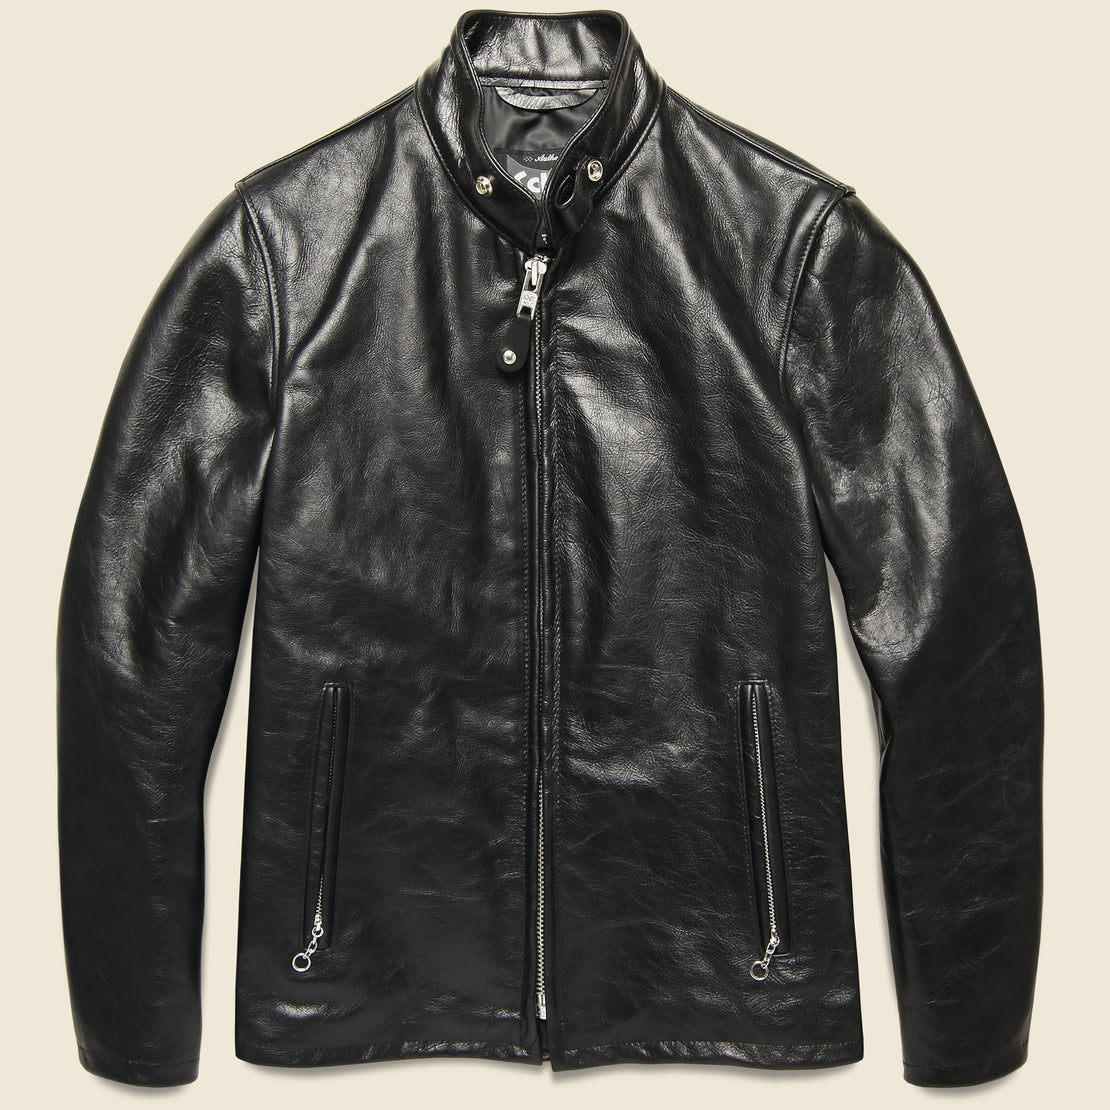 Schott Leather Racer Jacket "Black"